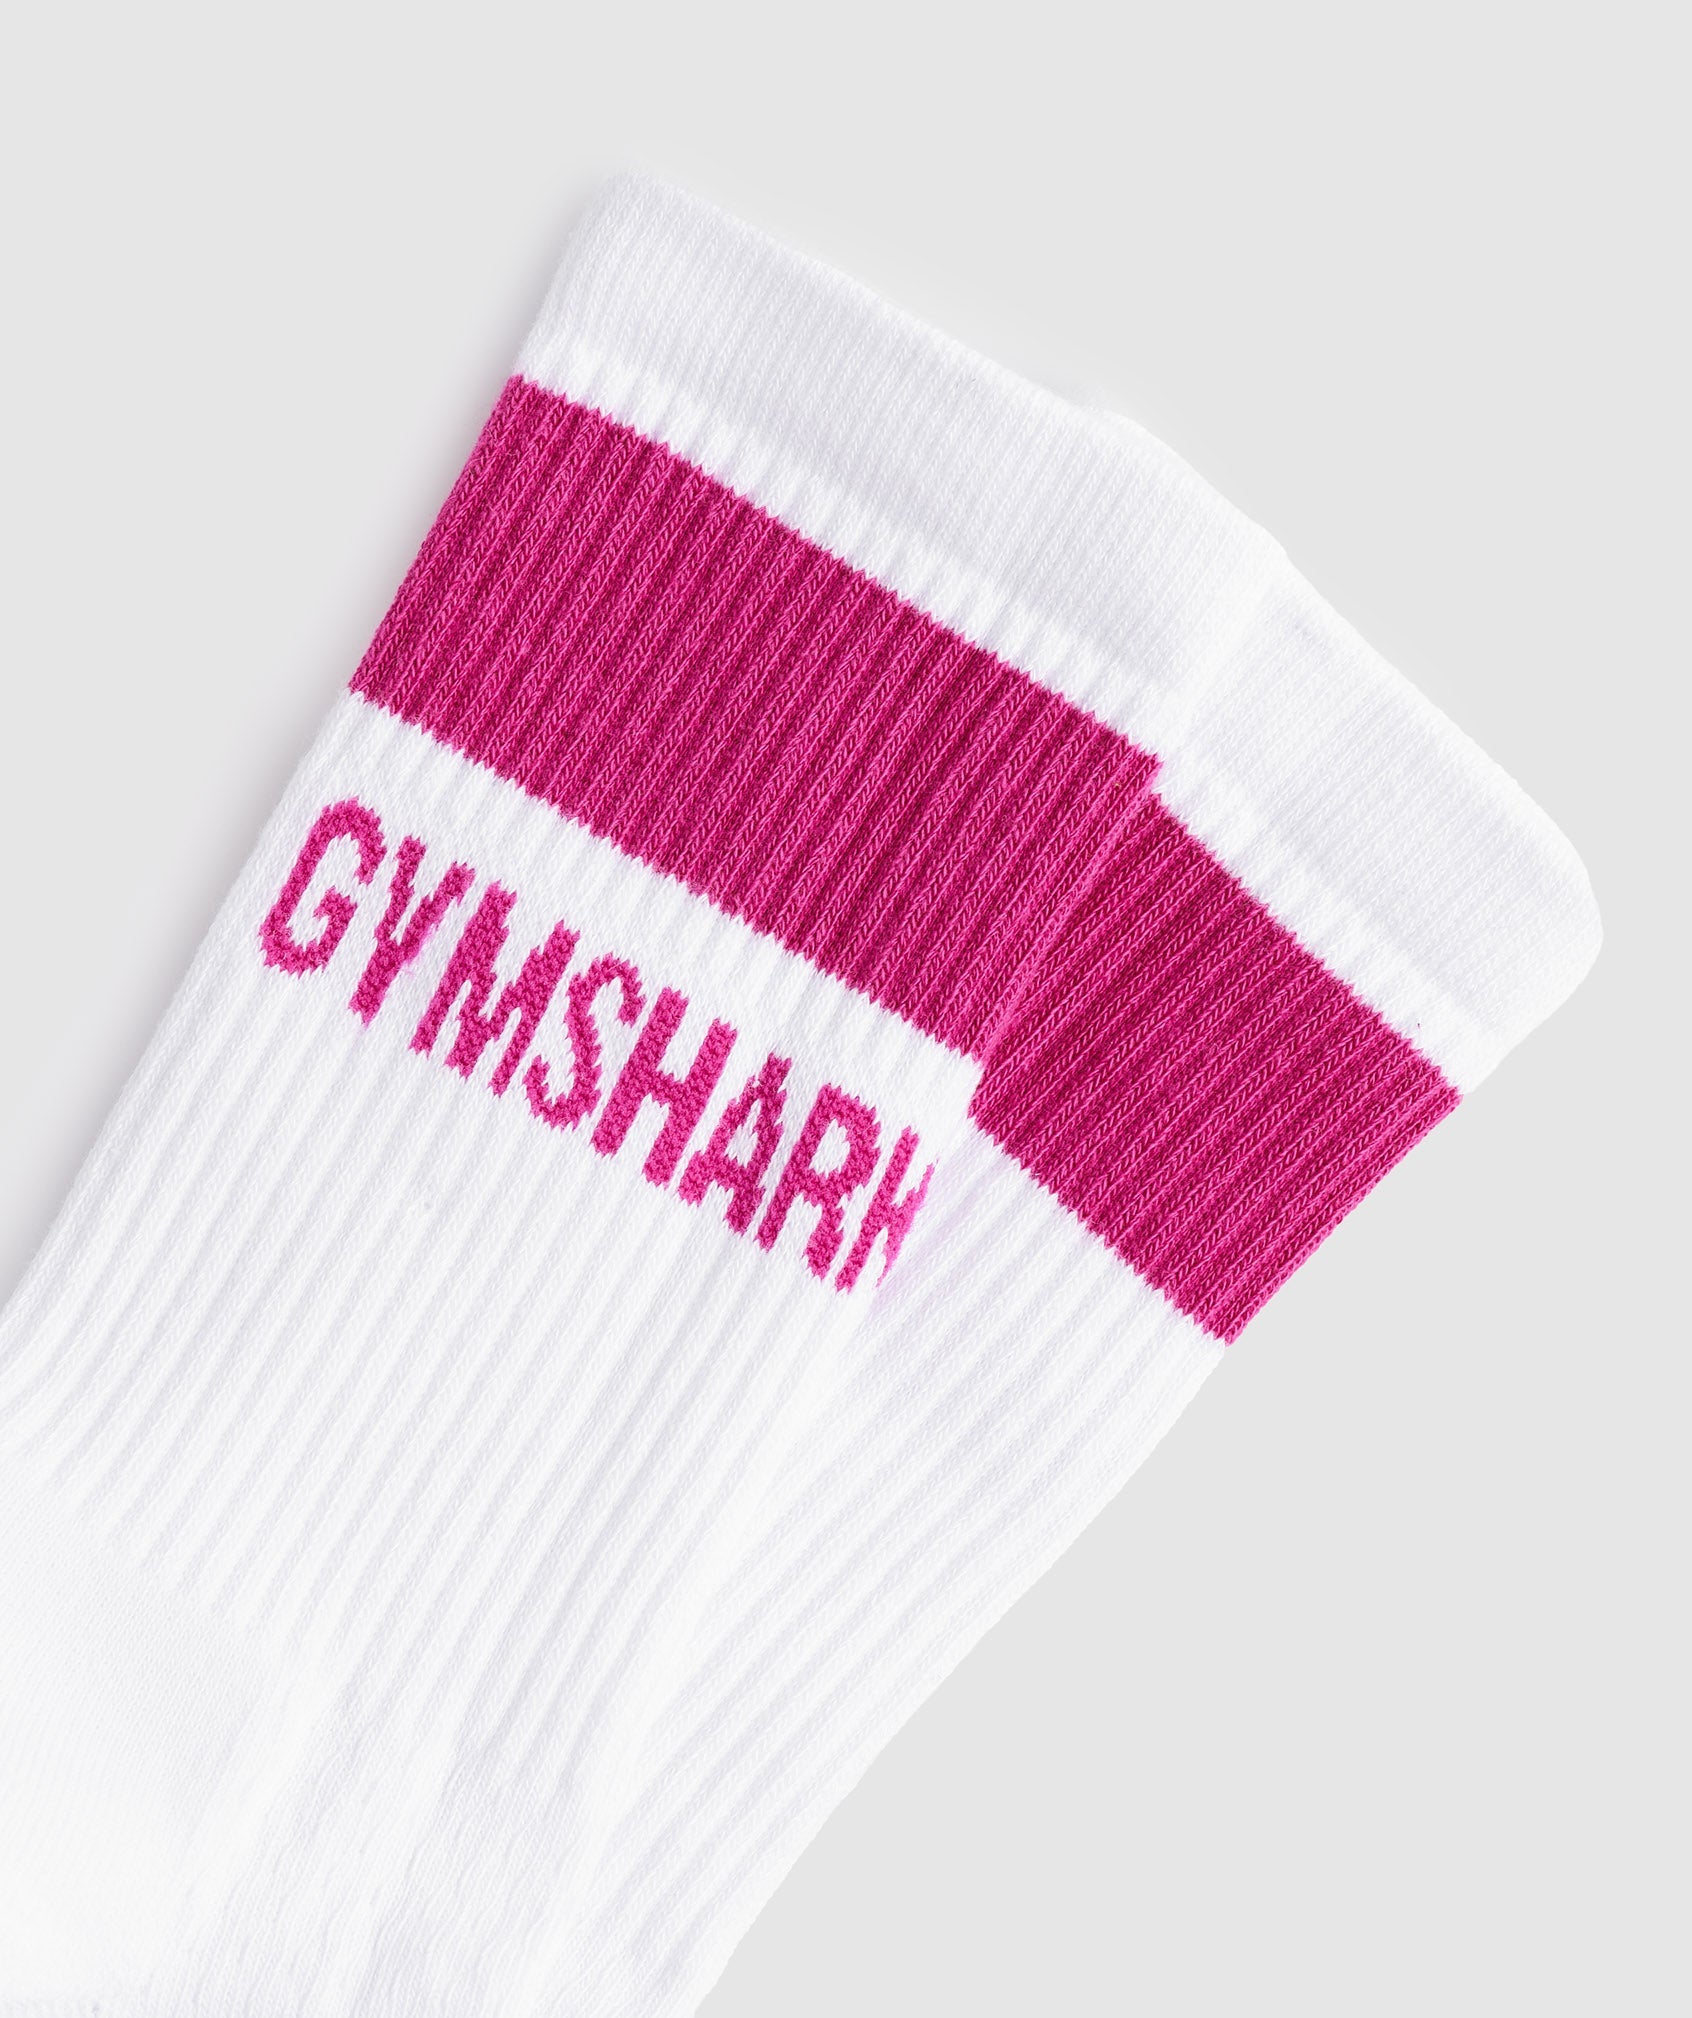 Premium Jacquard Single Socks in White/Magenta Pink